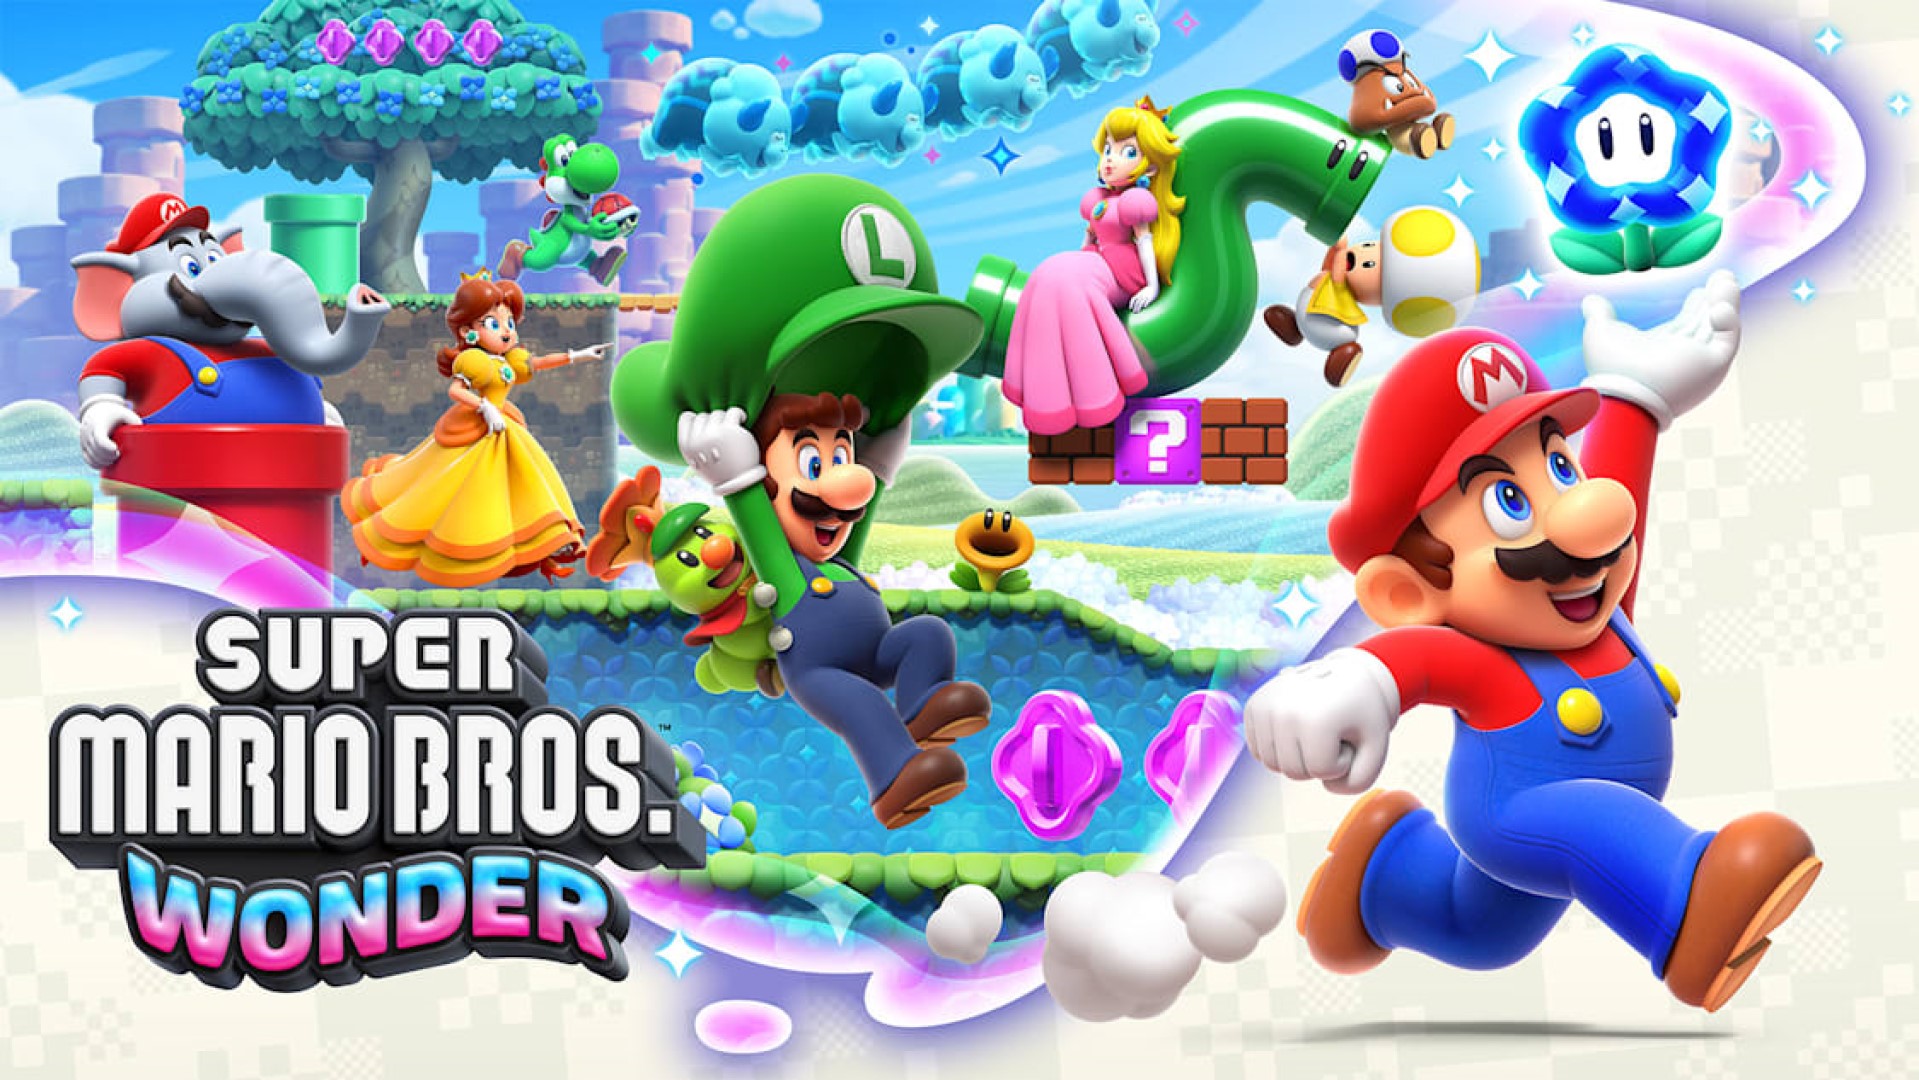 Super Mario Bros. Wonder Has Sold 11.96 Million Units Worldwide